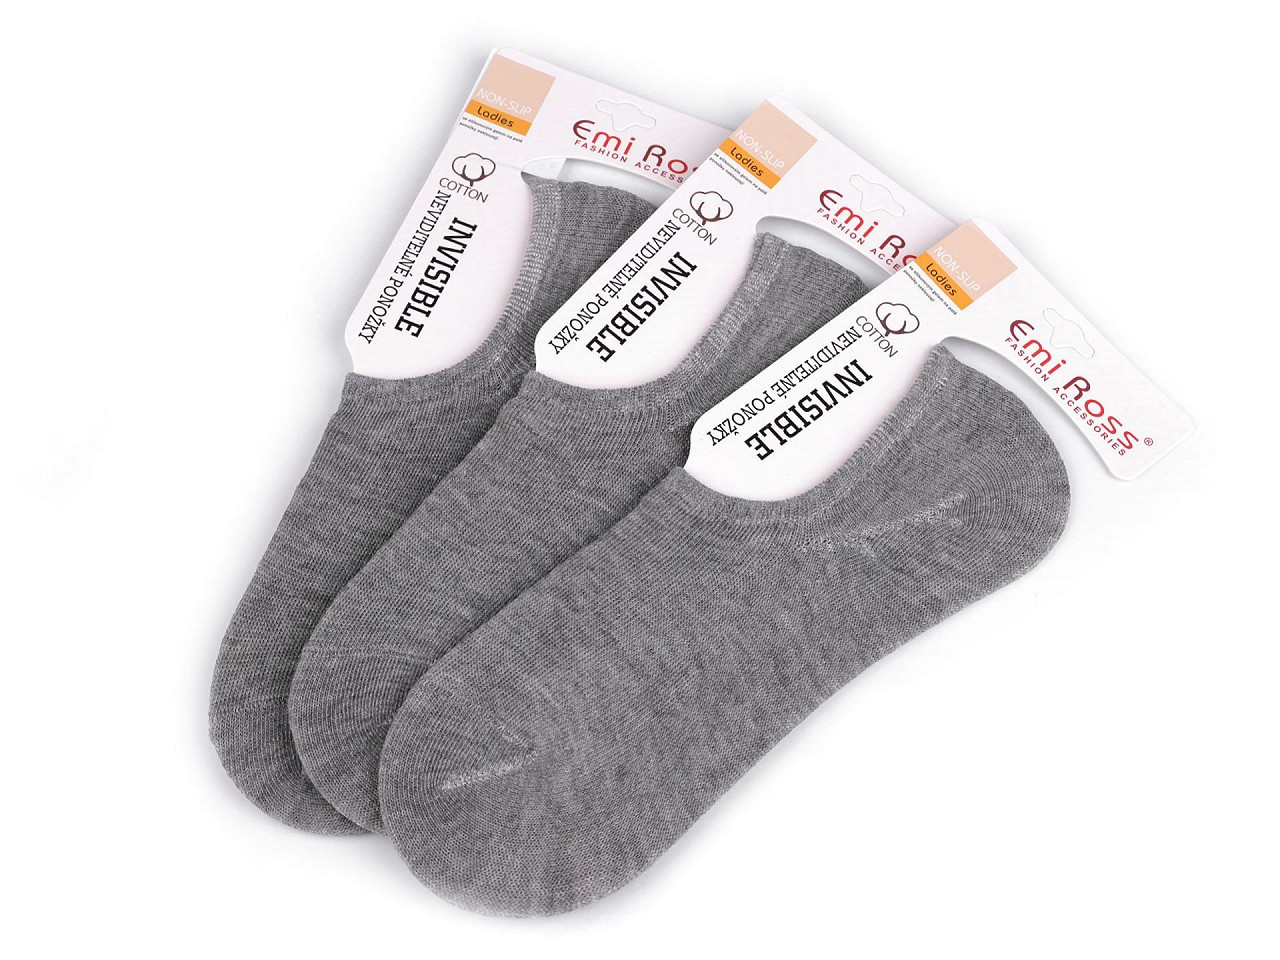 Dámské bavlněné ponožky do tenisek Emi Ross, barva 8 (vel. 39-42) šedá